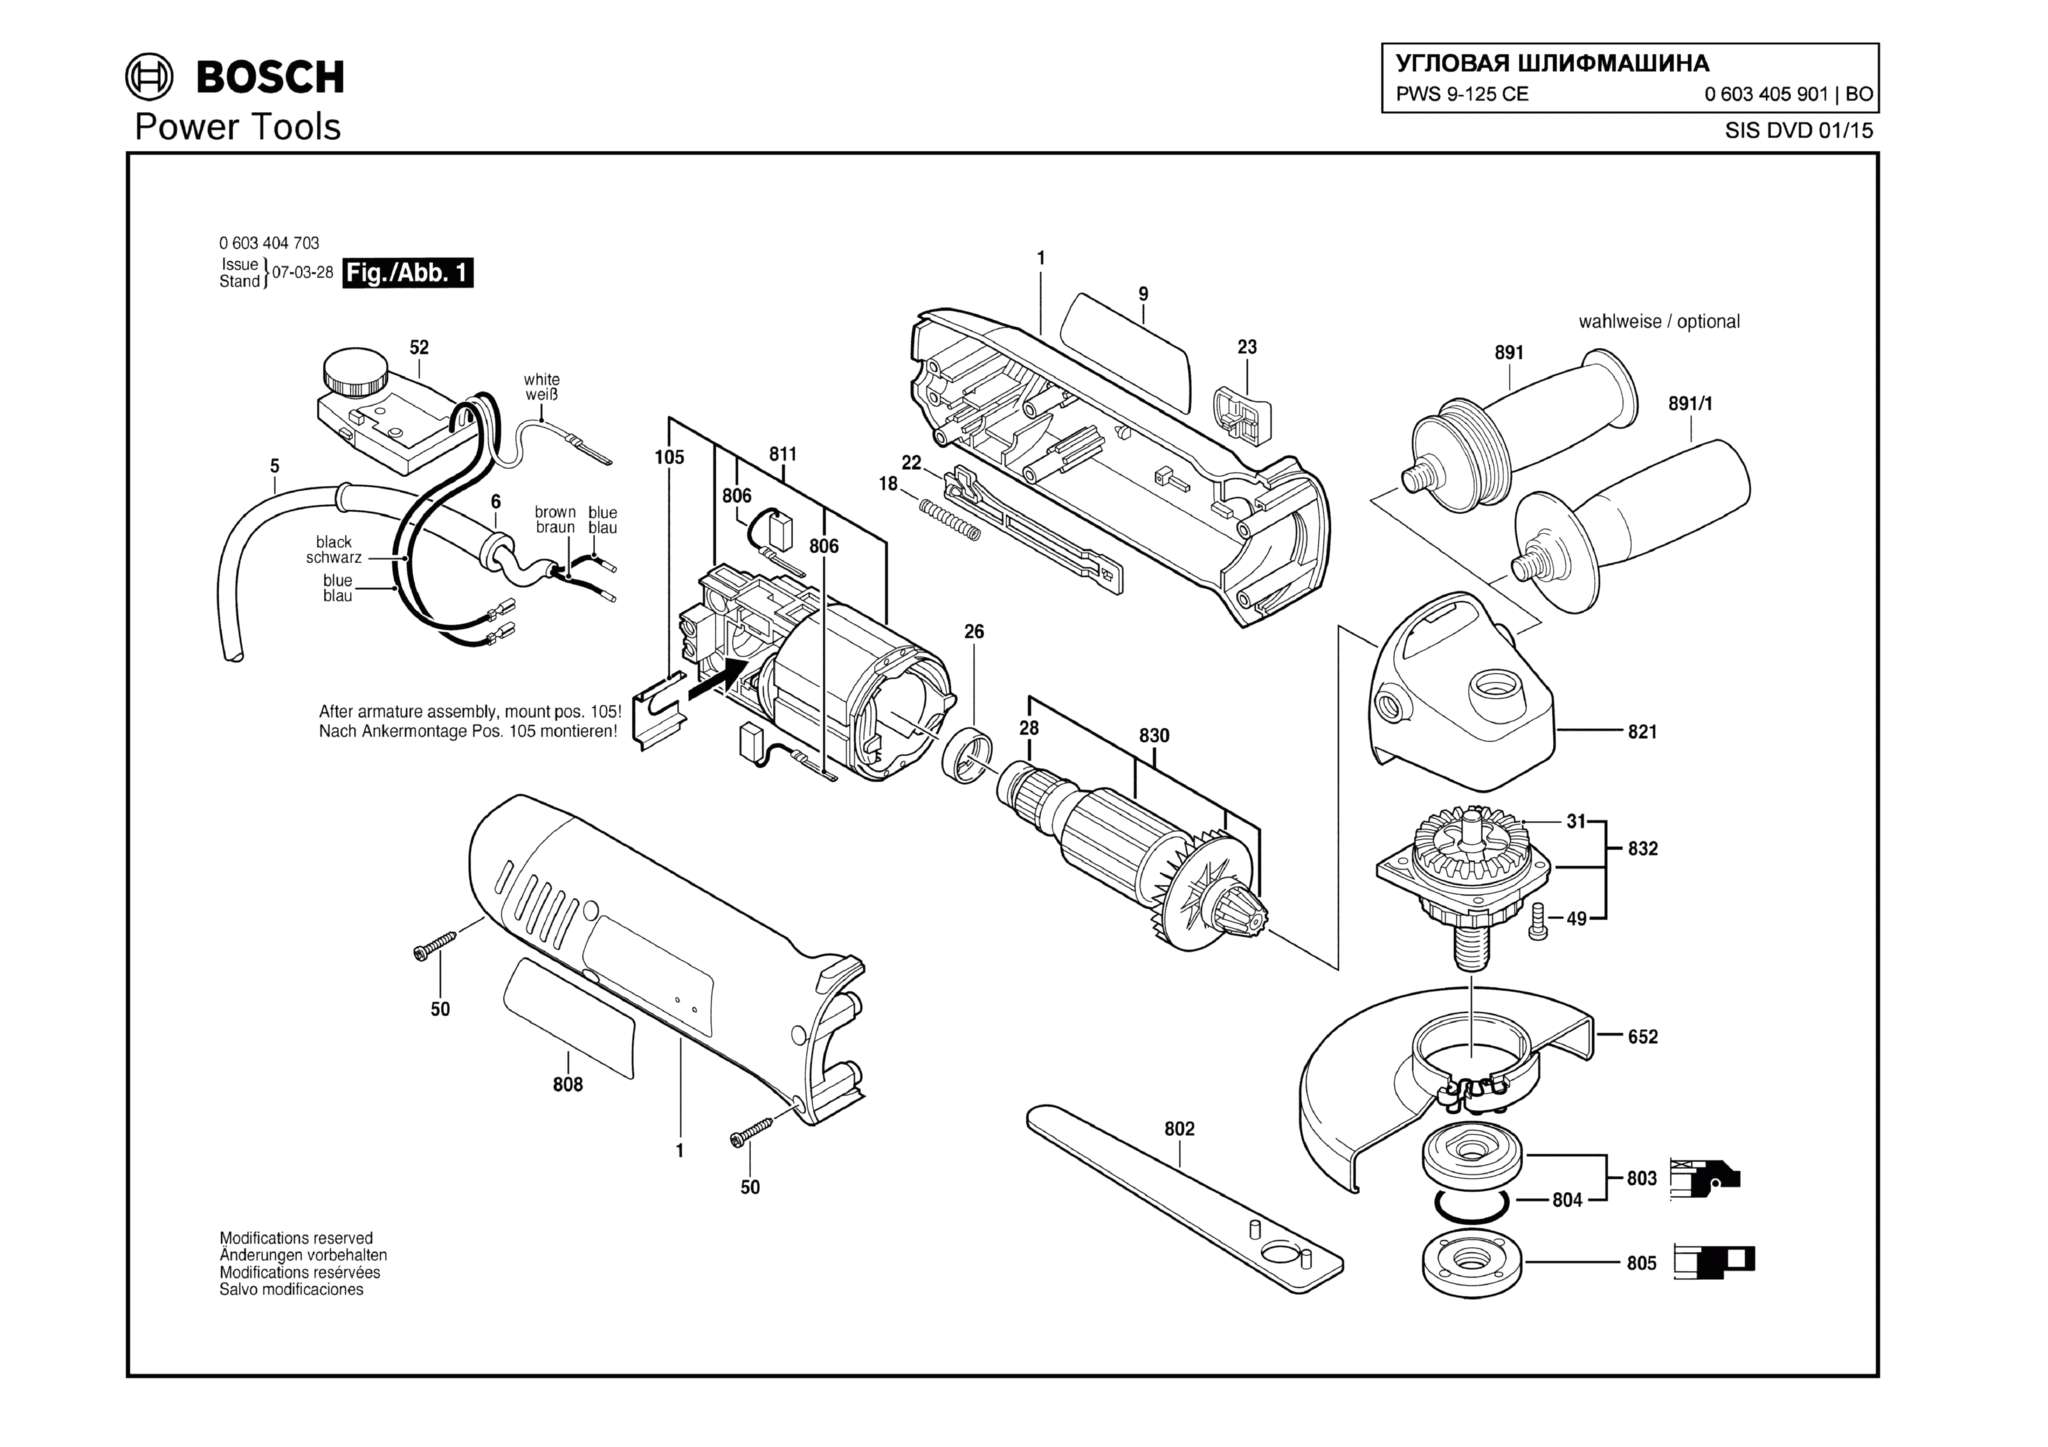 Запчасти, схема и деталировка Bosch PWS 9-125 CE (ТИП 0603405901)